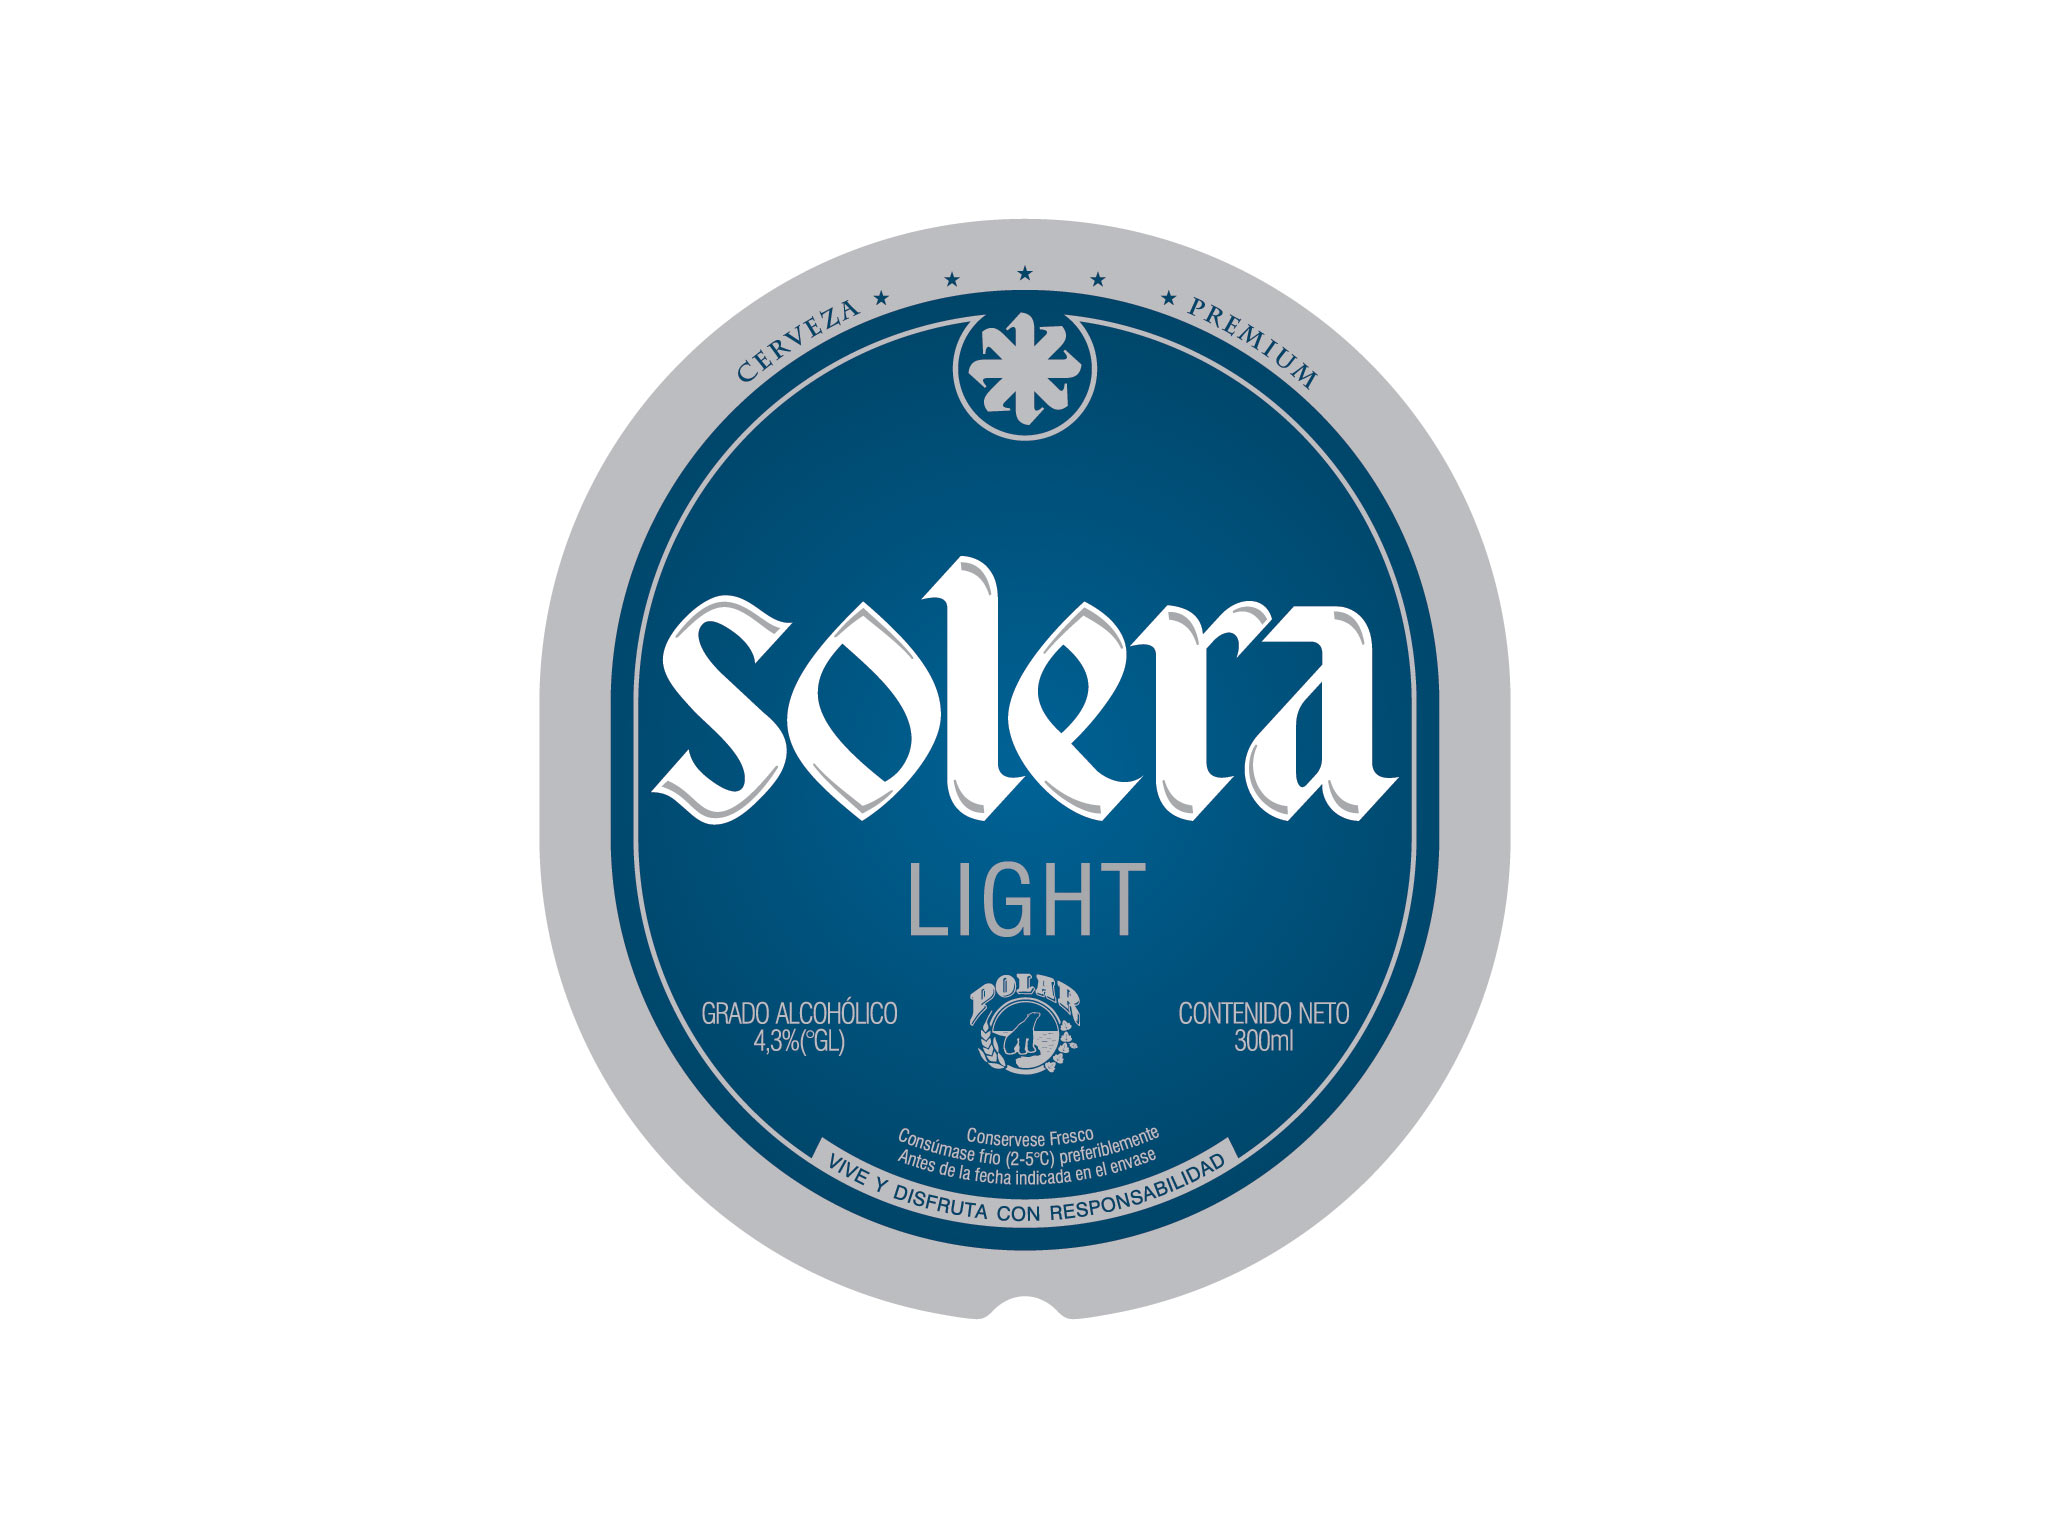 Solera Light